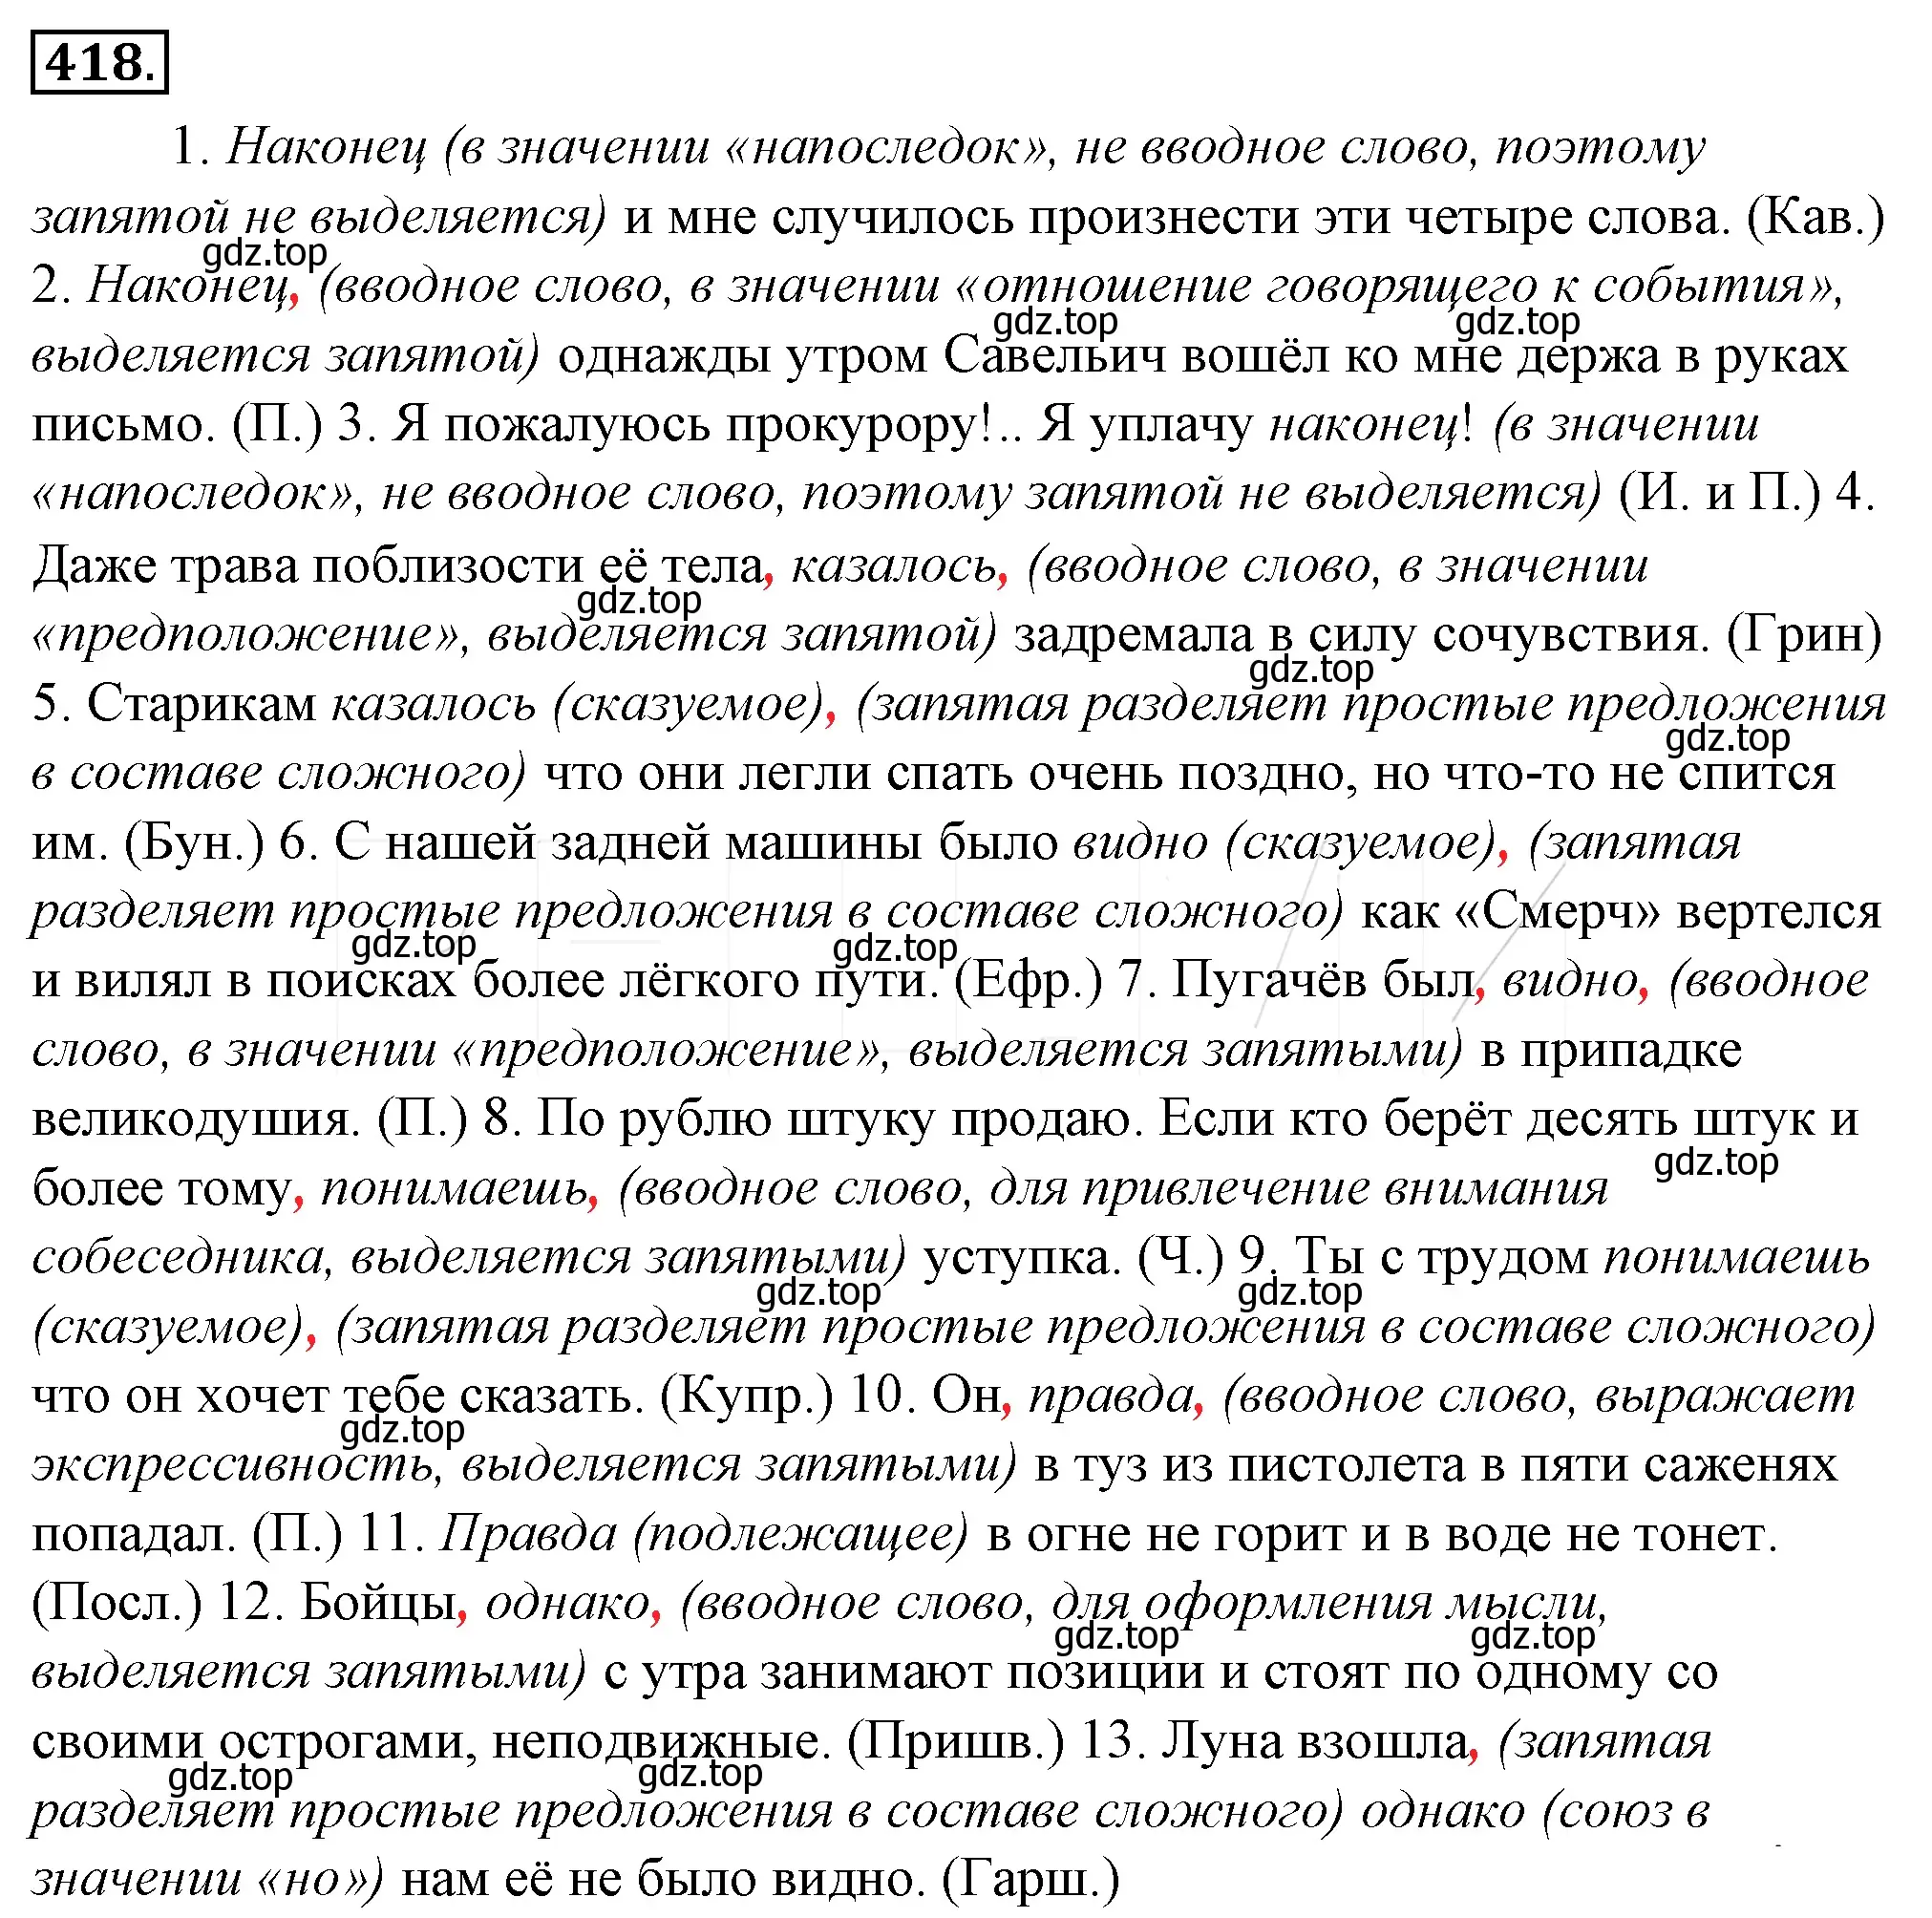 Решение 4. номер 83 (страница 113) гдз по русскому языку 10-11 класс Гольцова, Шамшин, учебник 2 часть